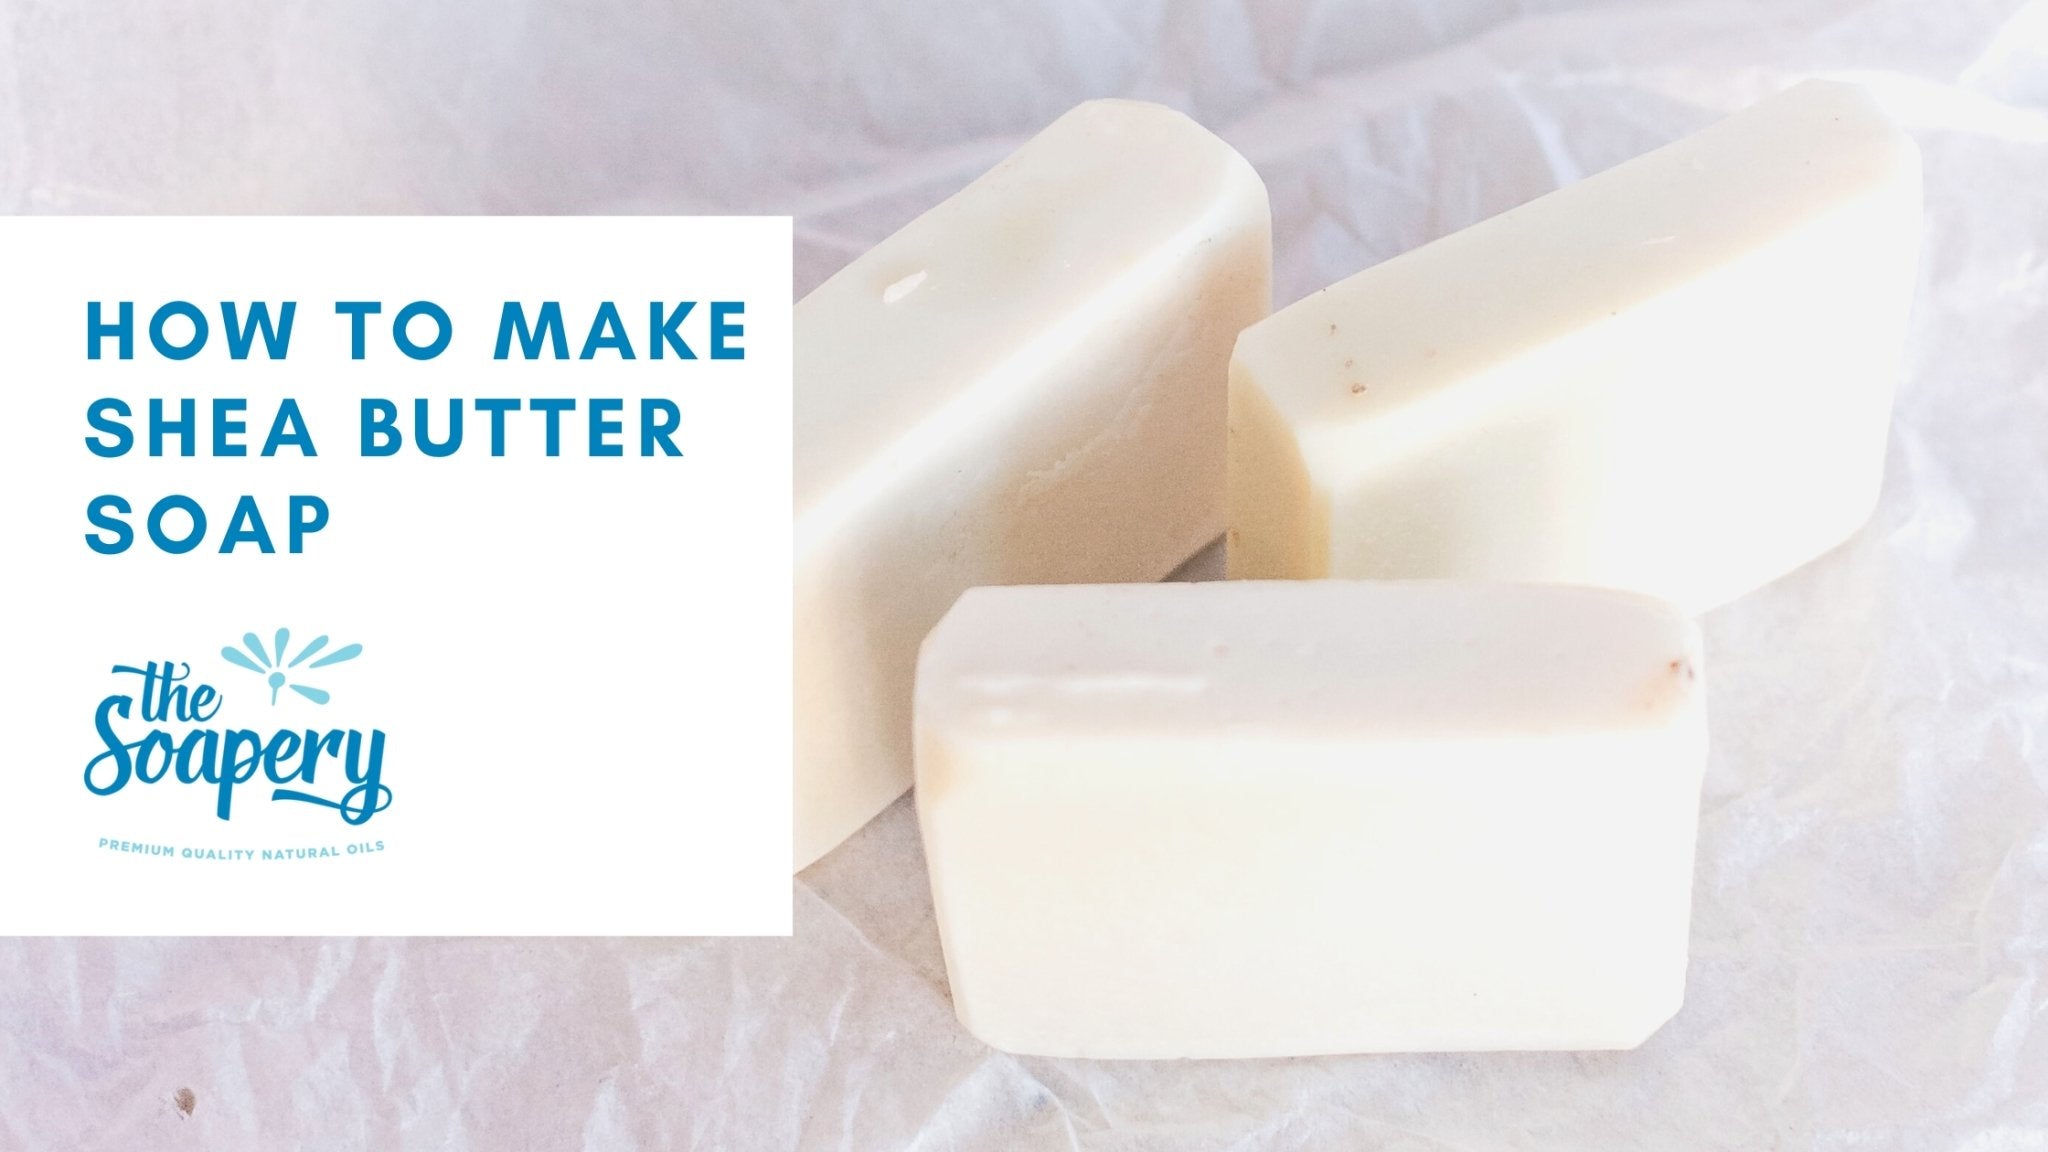 Gentle Shea Butter Face Soap Recipe for Beautiful Skin